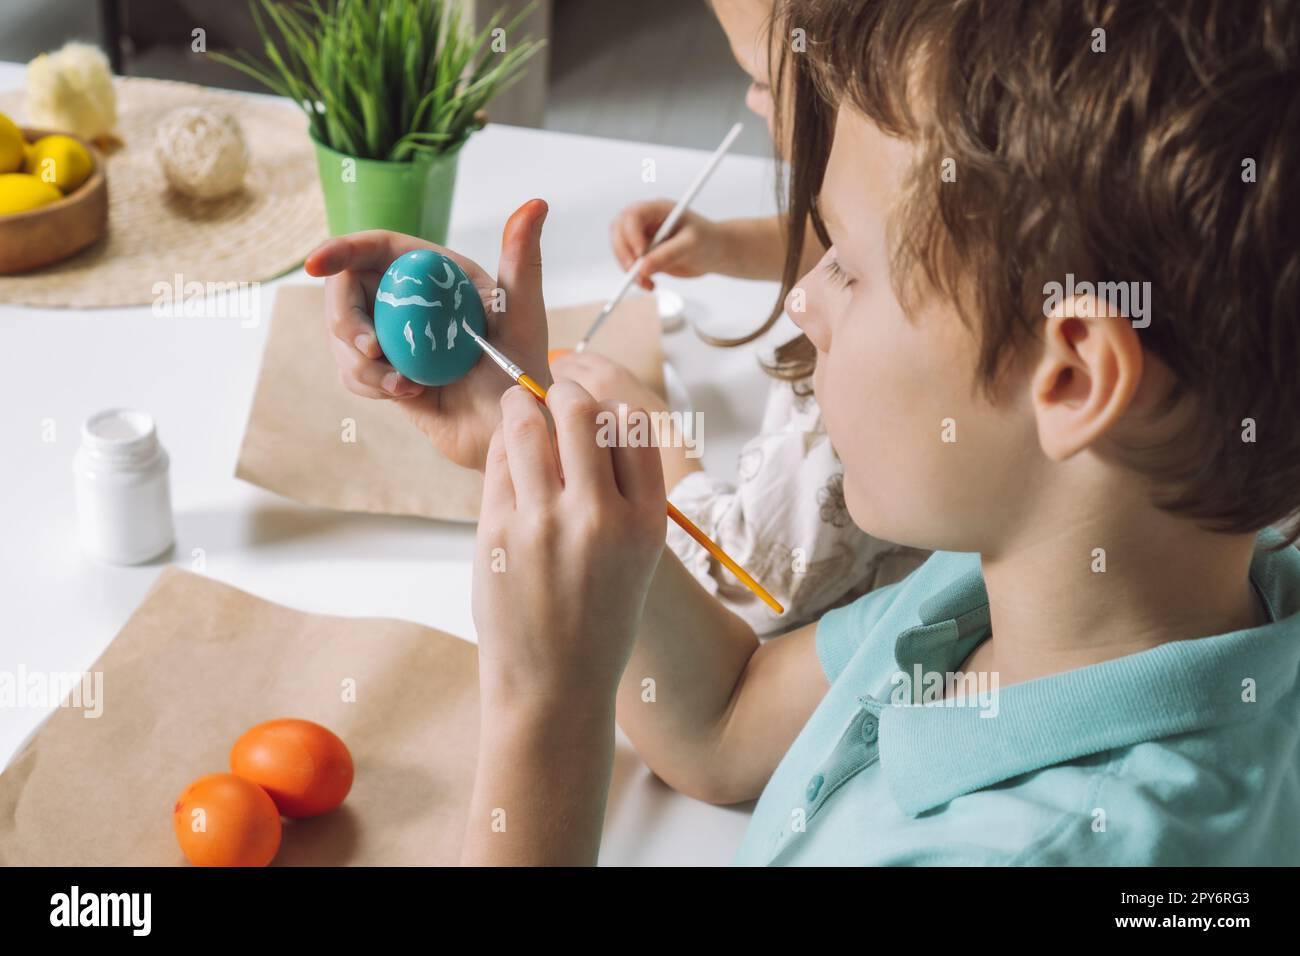 Ritratto ritagliato della mano del ragazzo, pittura di uova di galline pasquali multicolore, tavolo con lastre di carta marrone, pennello Foto Stock